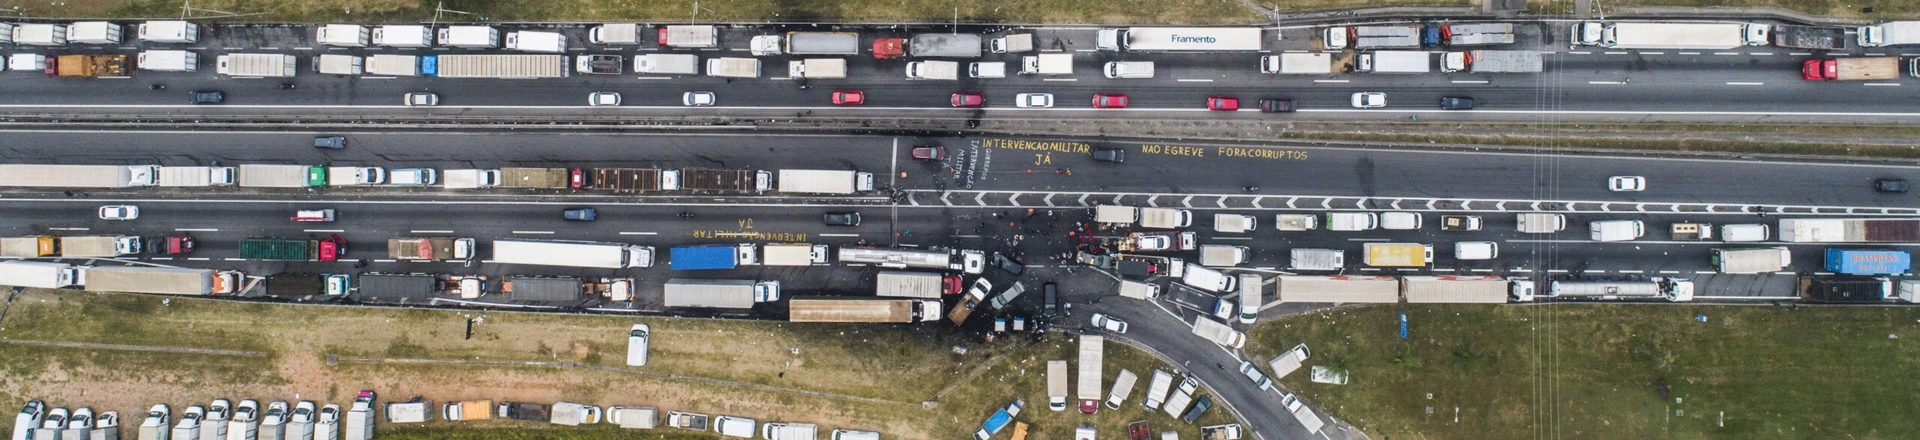 EMBU DAS ARTES, SP. 26.05.2018 - ESTRADAS-SP - Fila de caminhões durante greve de caminhoneiros da rodovia Régis Bittencourt, próximo a Embu das Artes.  (Foto: Danilo Verpa/Folhapress)